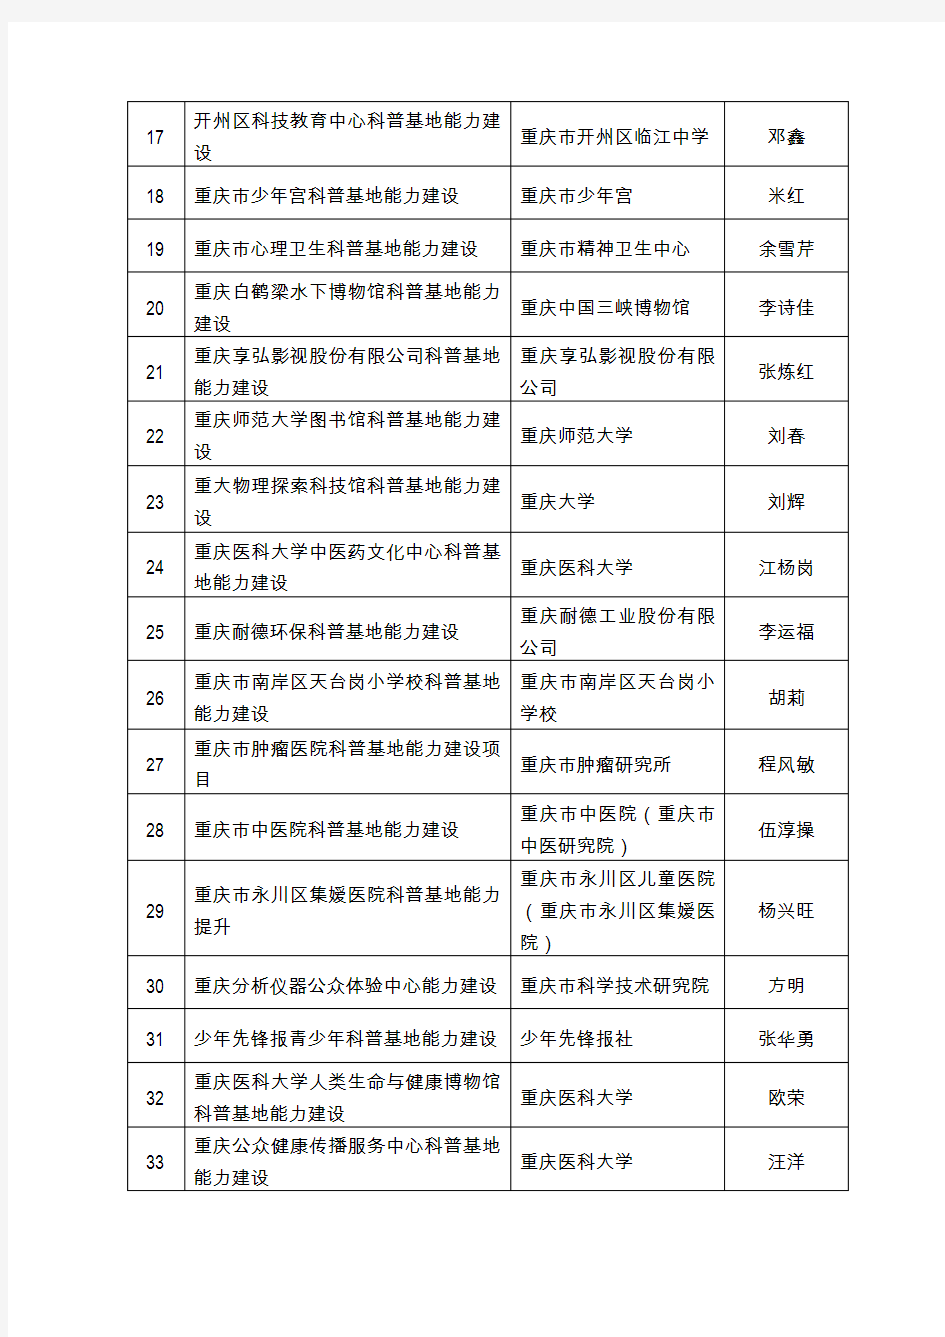 2019年重庆市科普基地能力提升项目拟支持项目清单